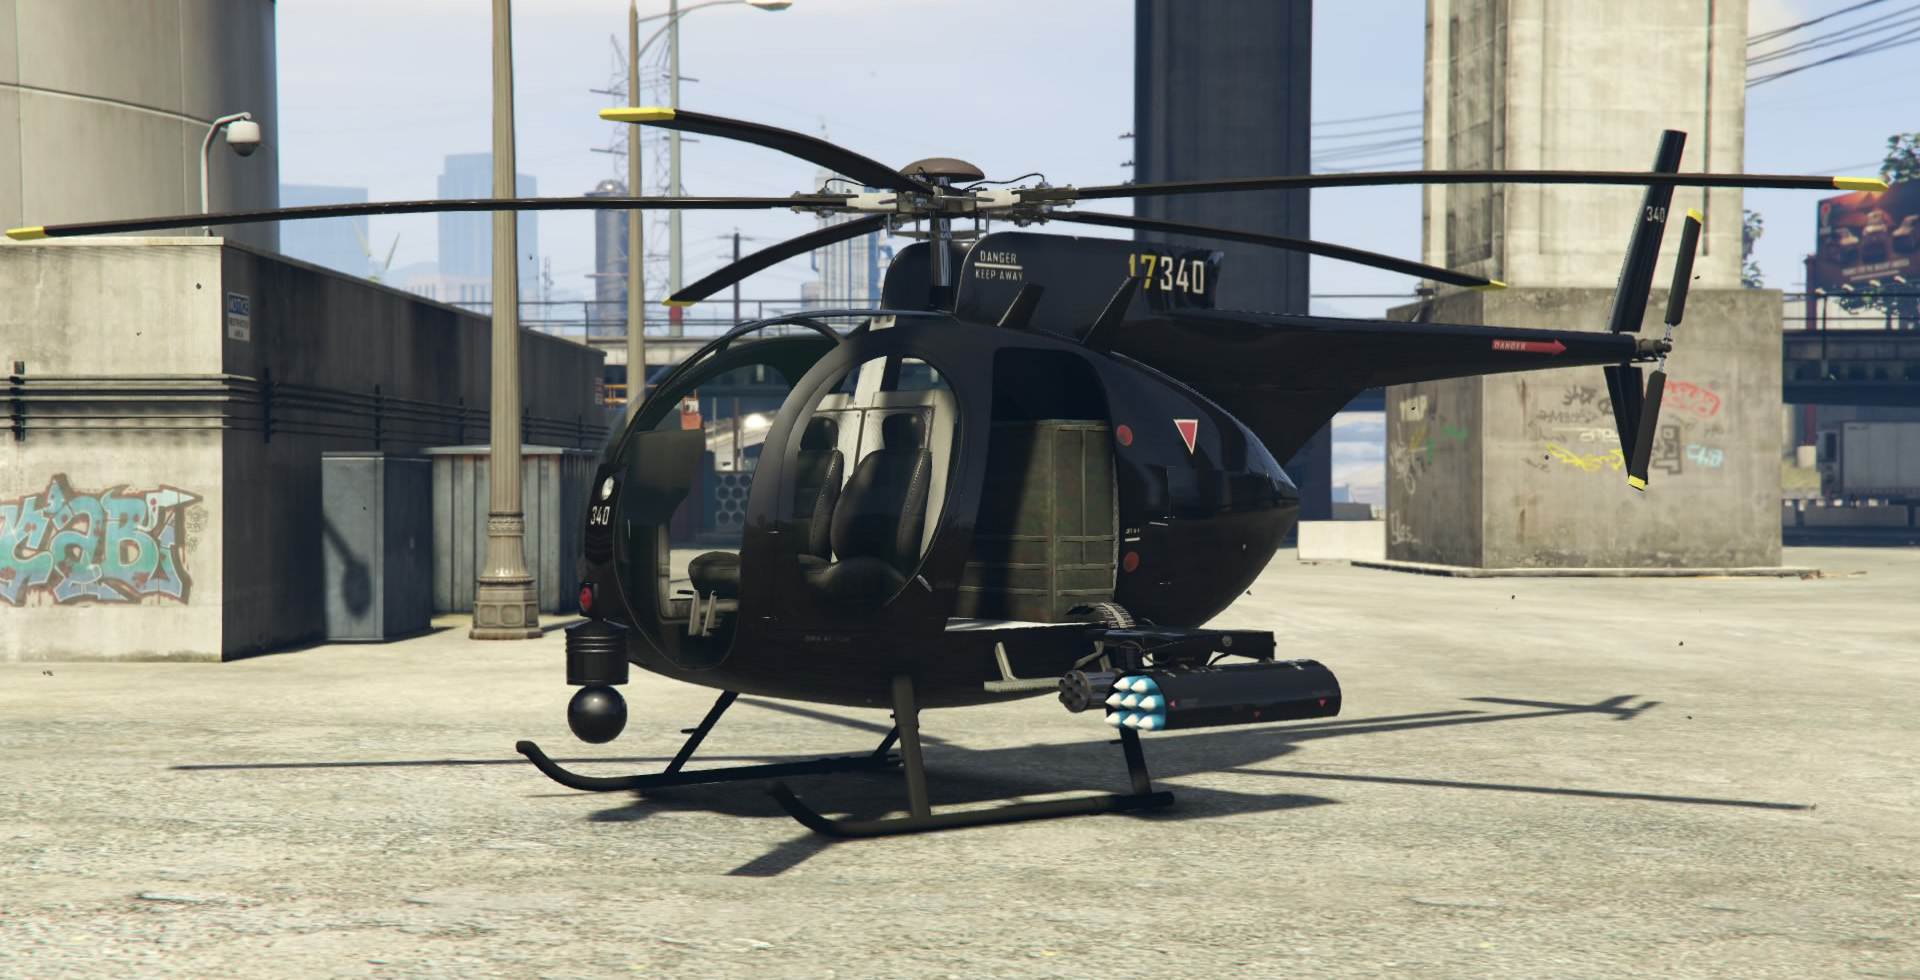 Gta 5 вертолет с прожектором фото 95